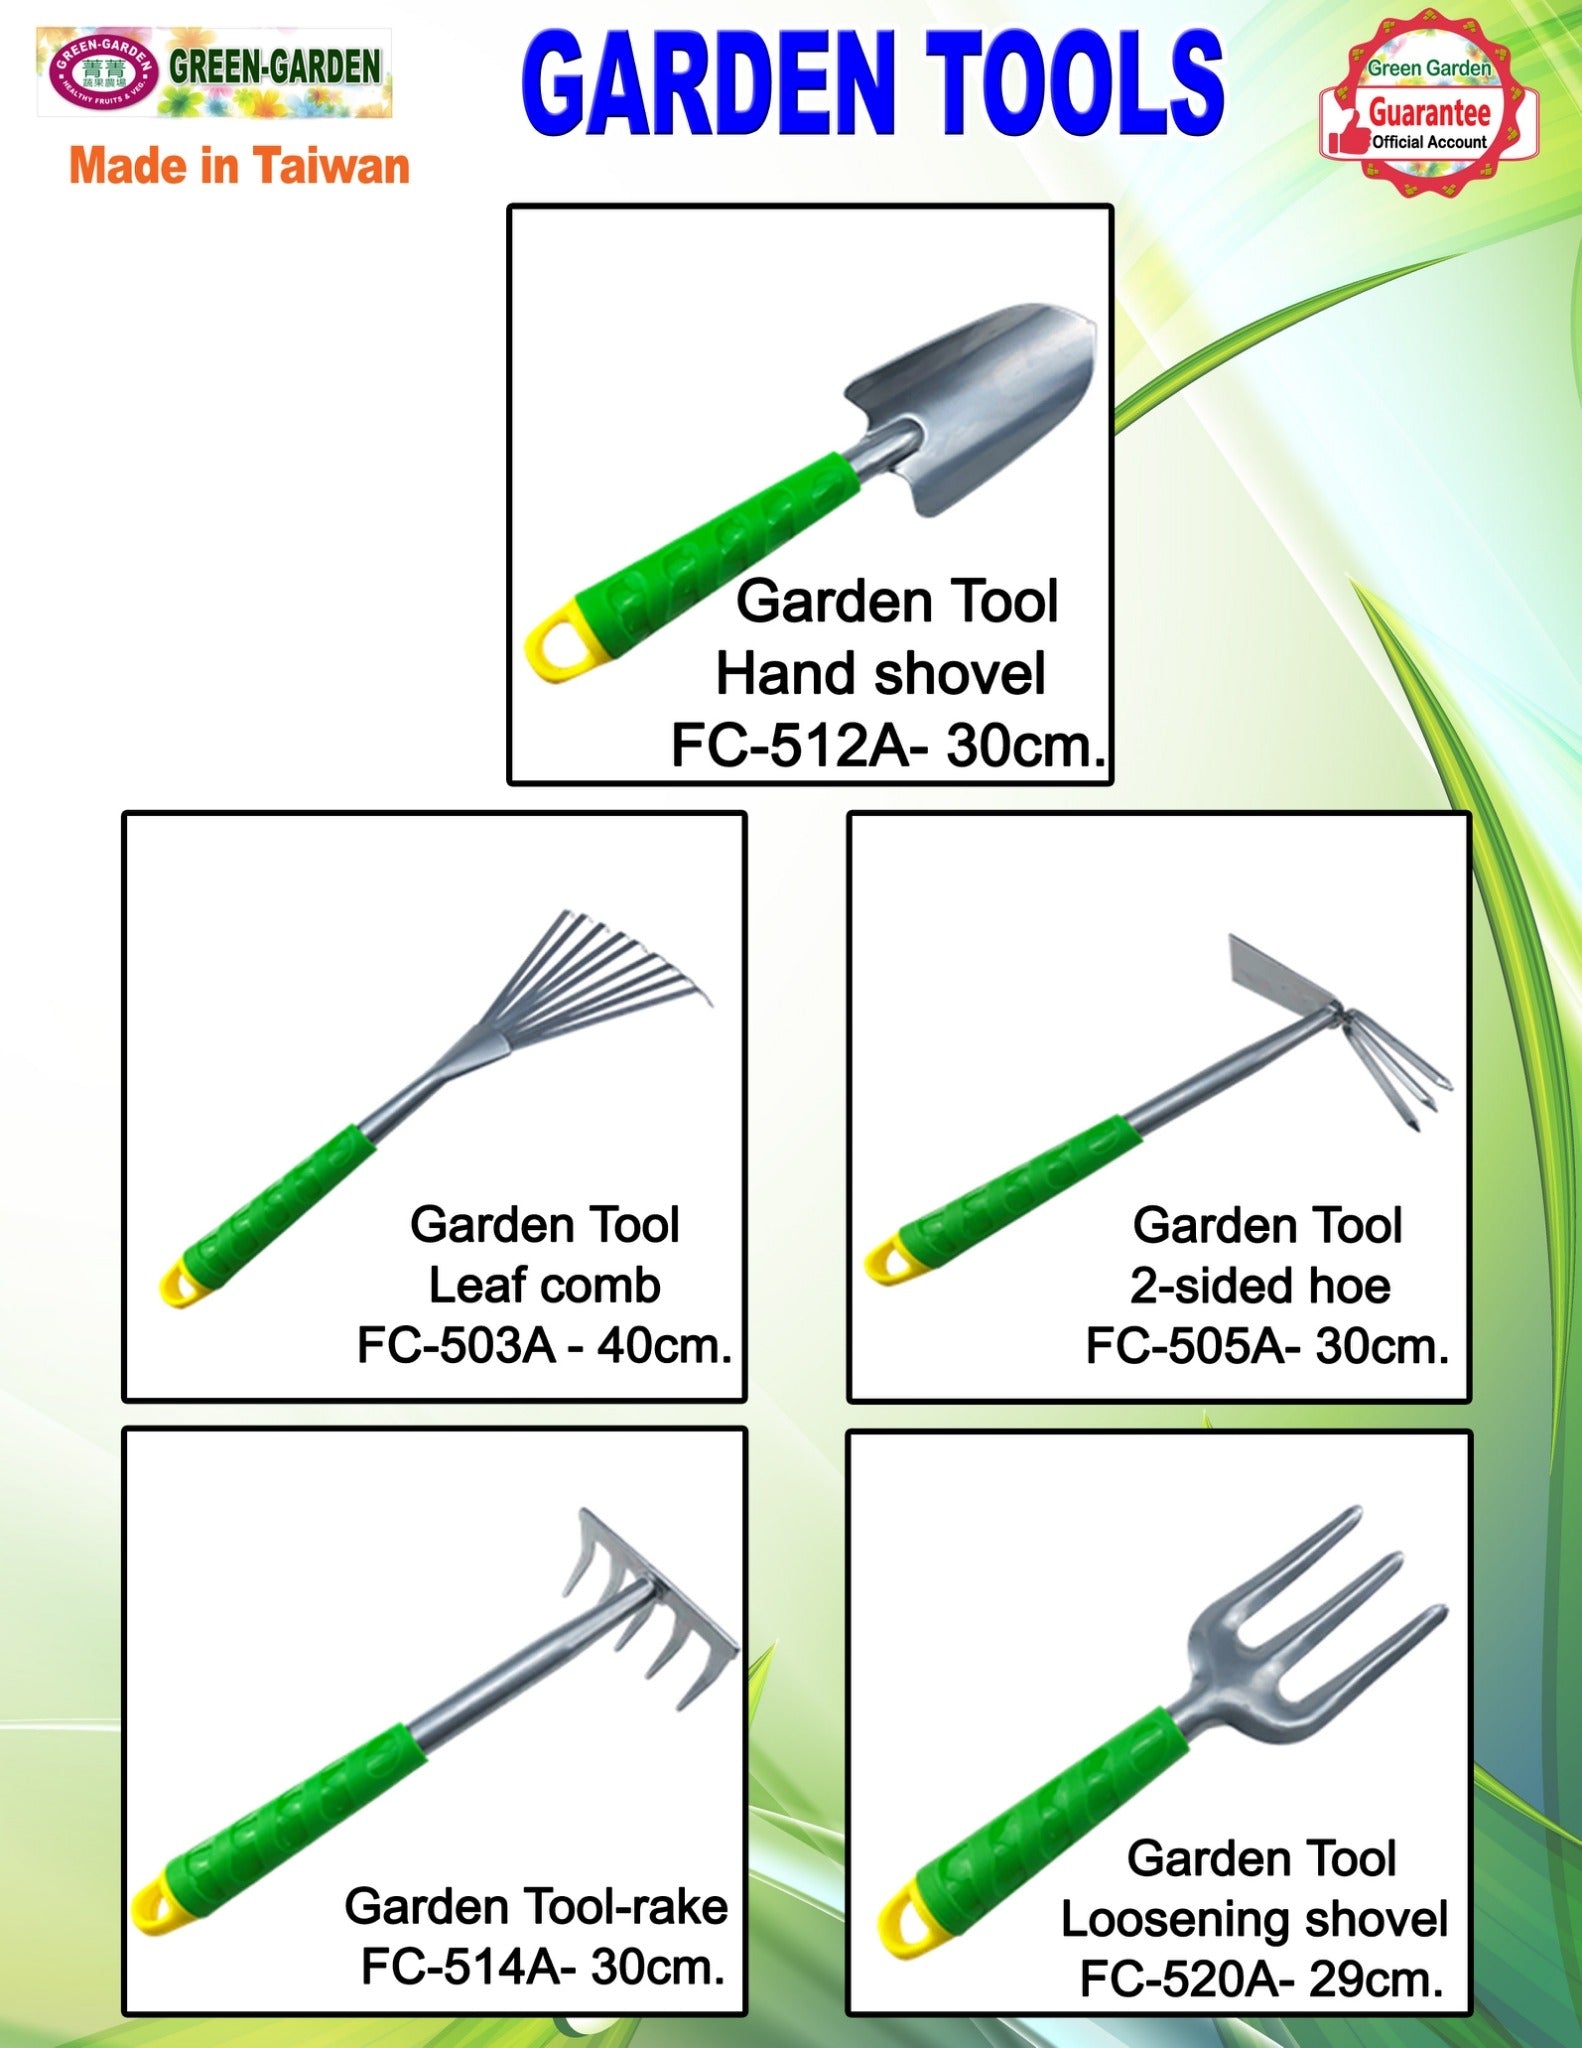 Garden Tool-Rake